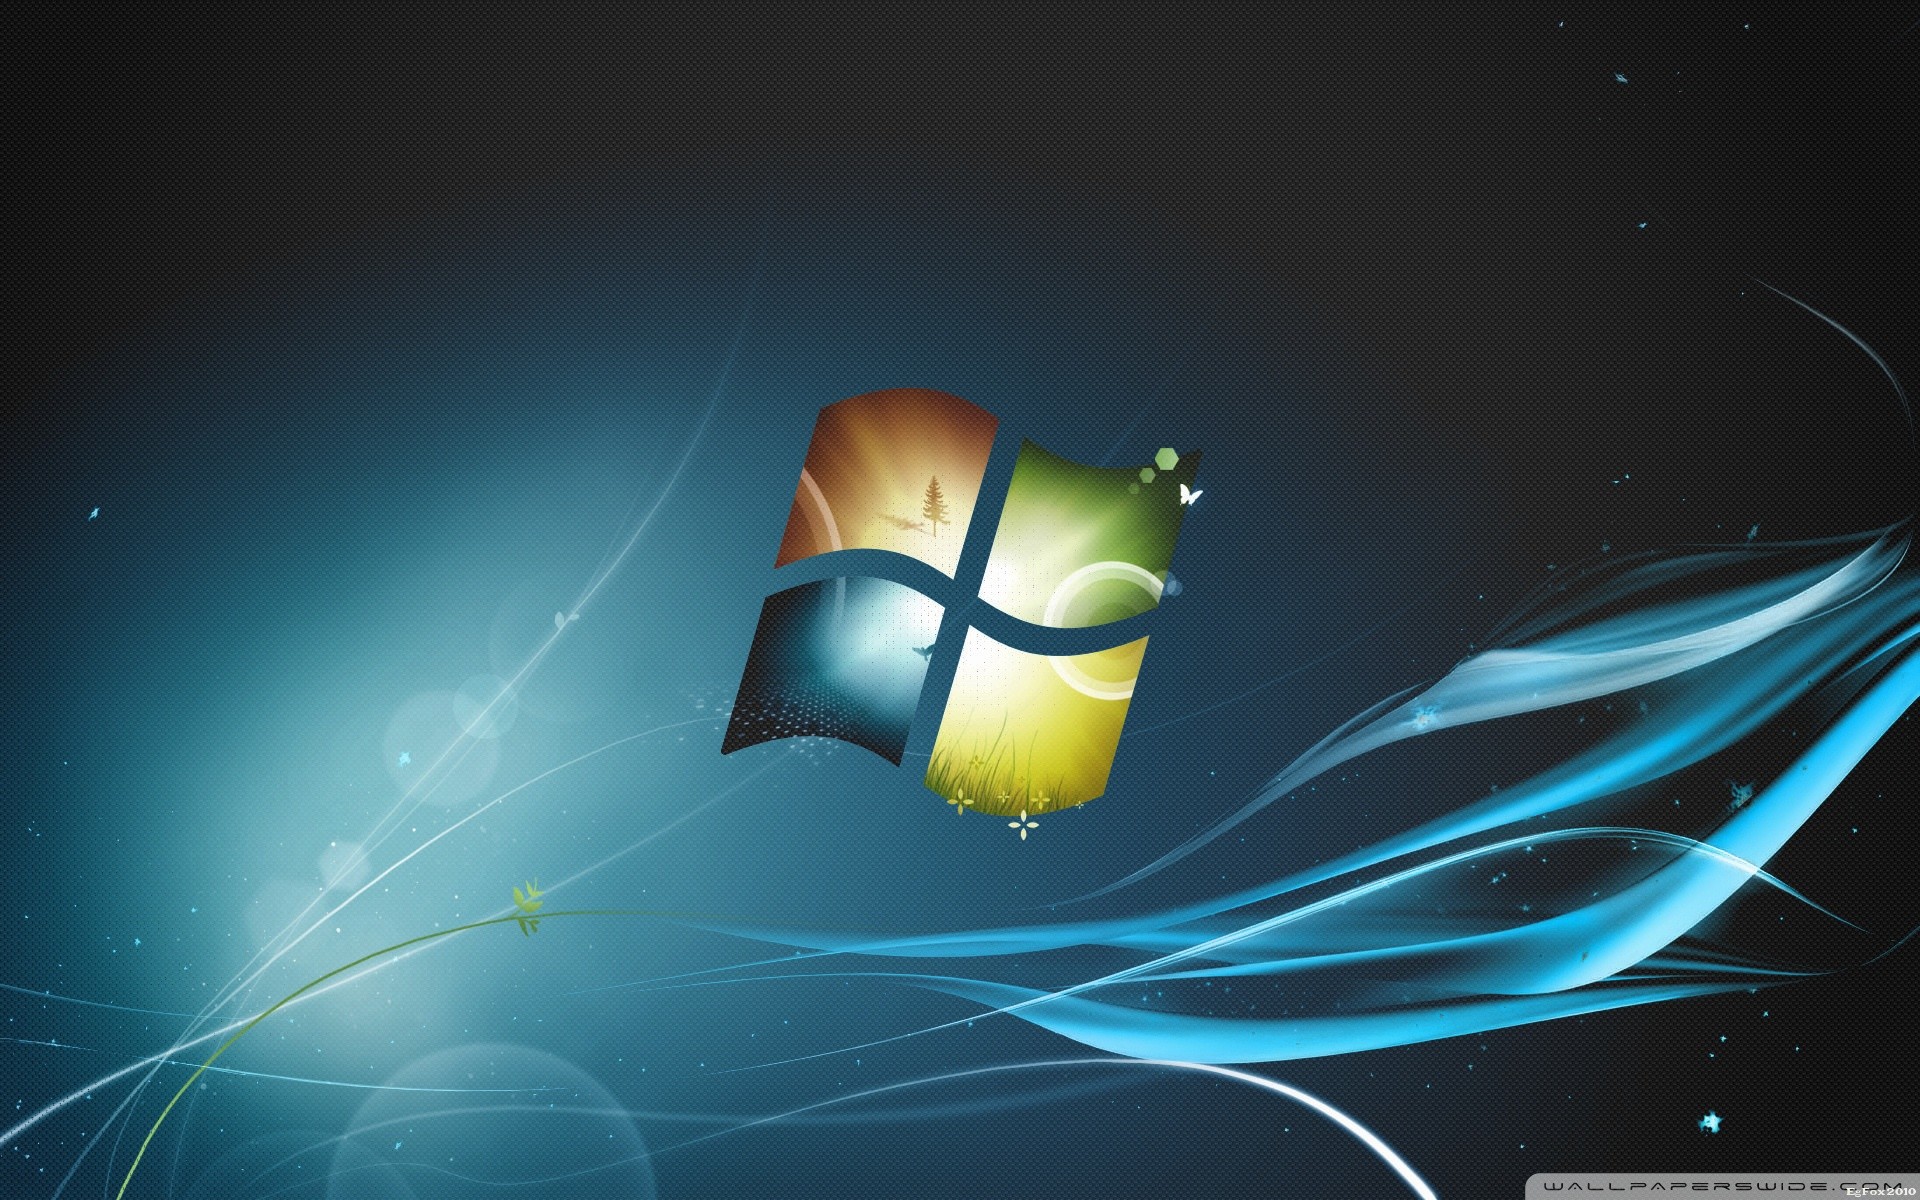 Windows 7 Ultimate Desktop Background 56 Images